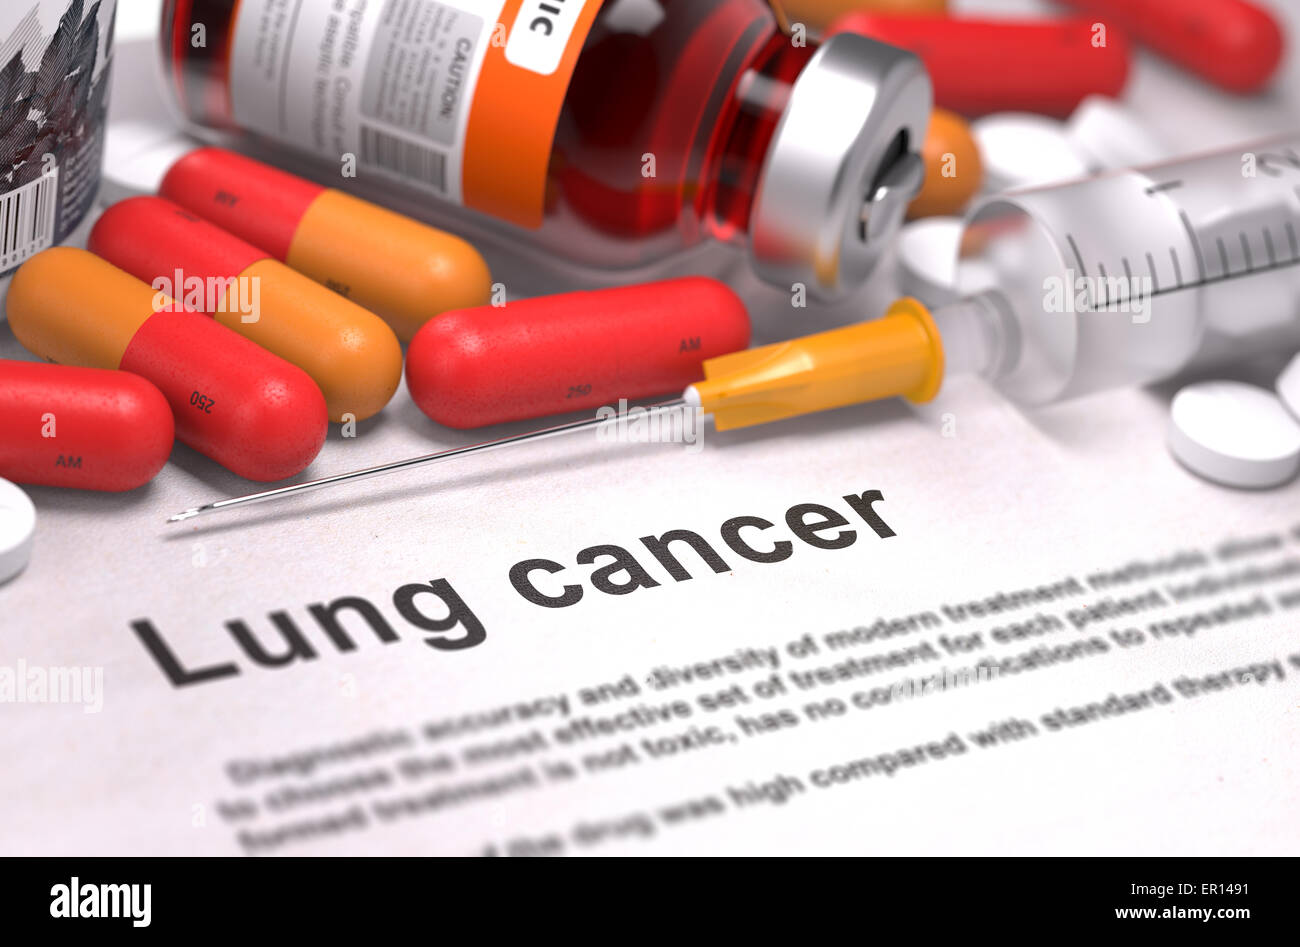 Lung Cancer Diagnosis. Medical Concept. Stock Photo